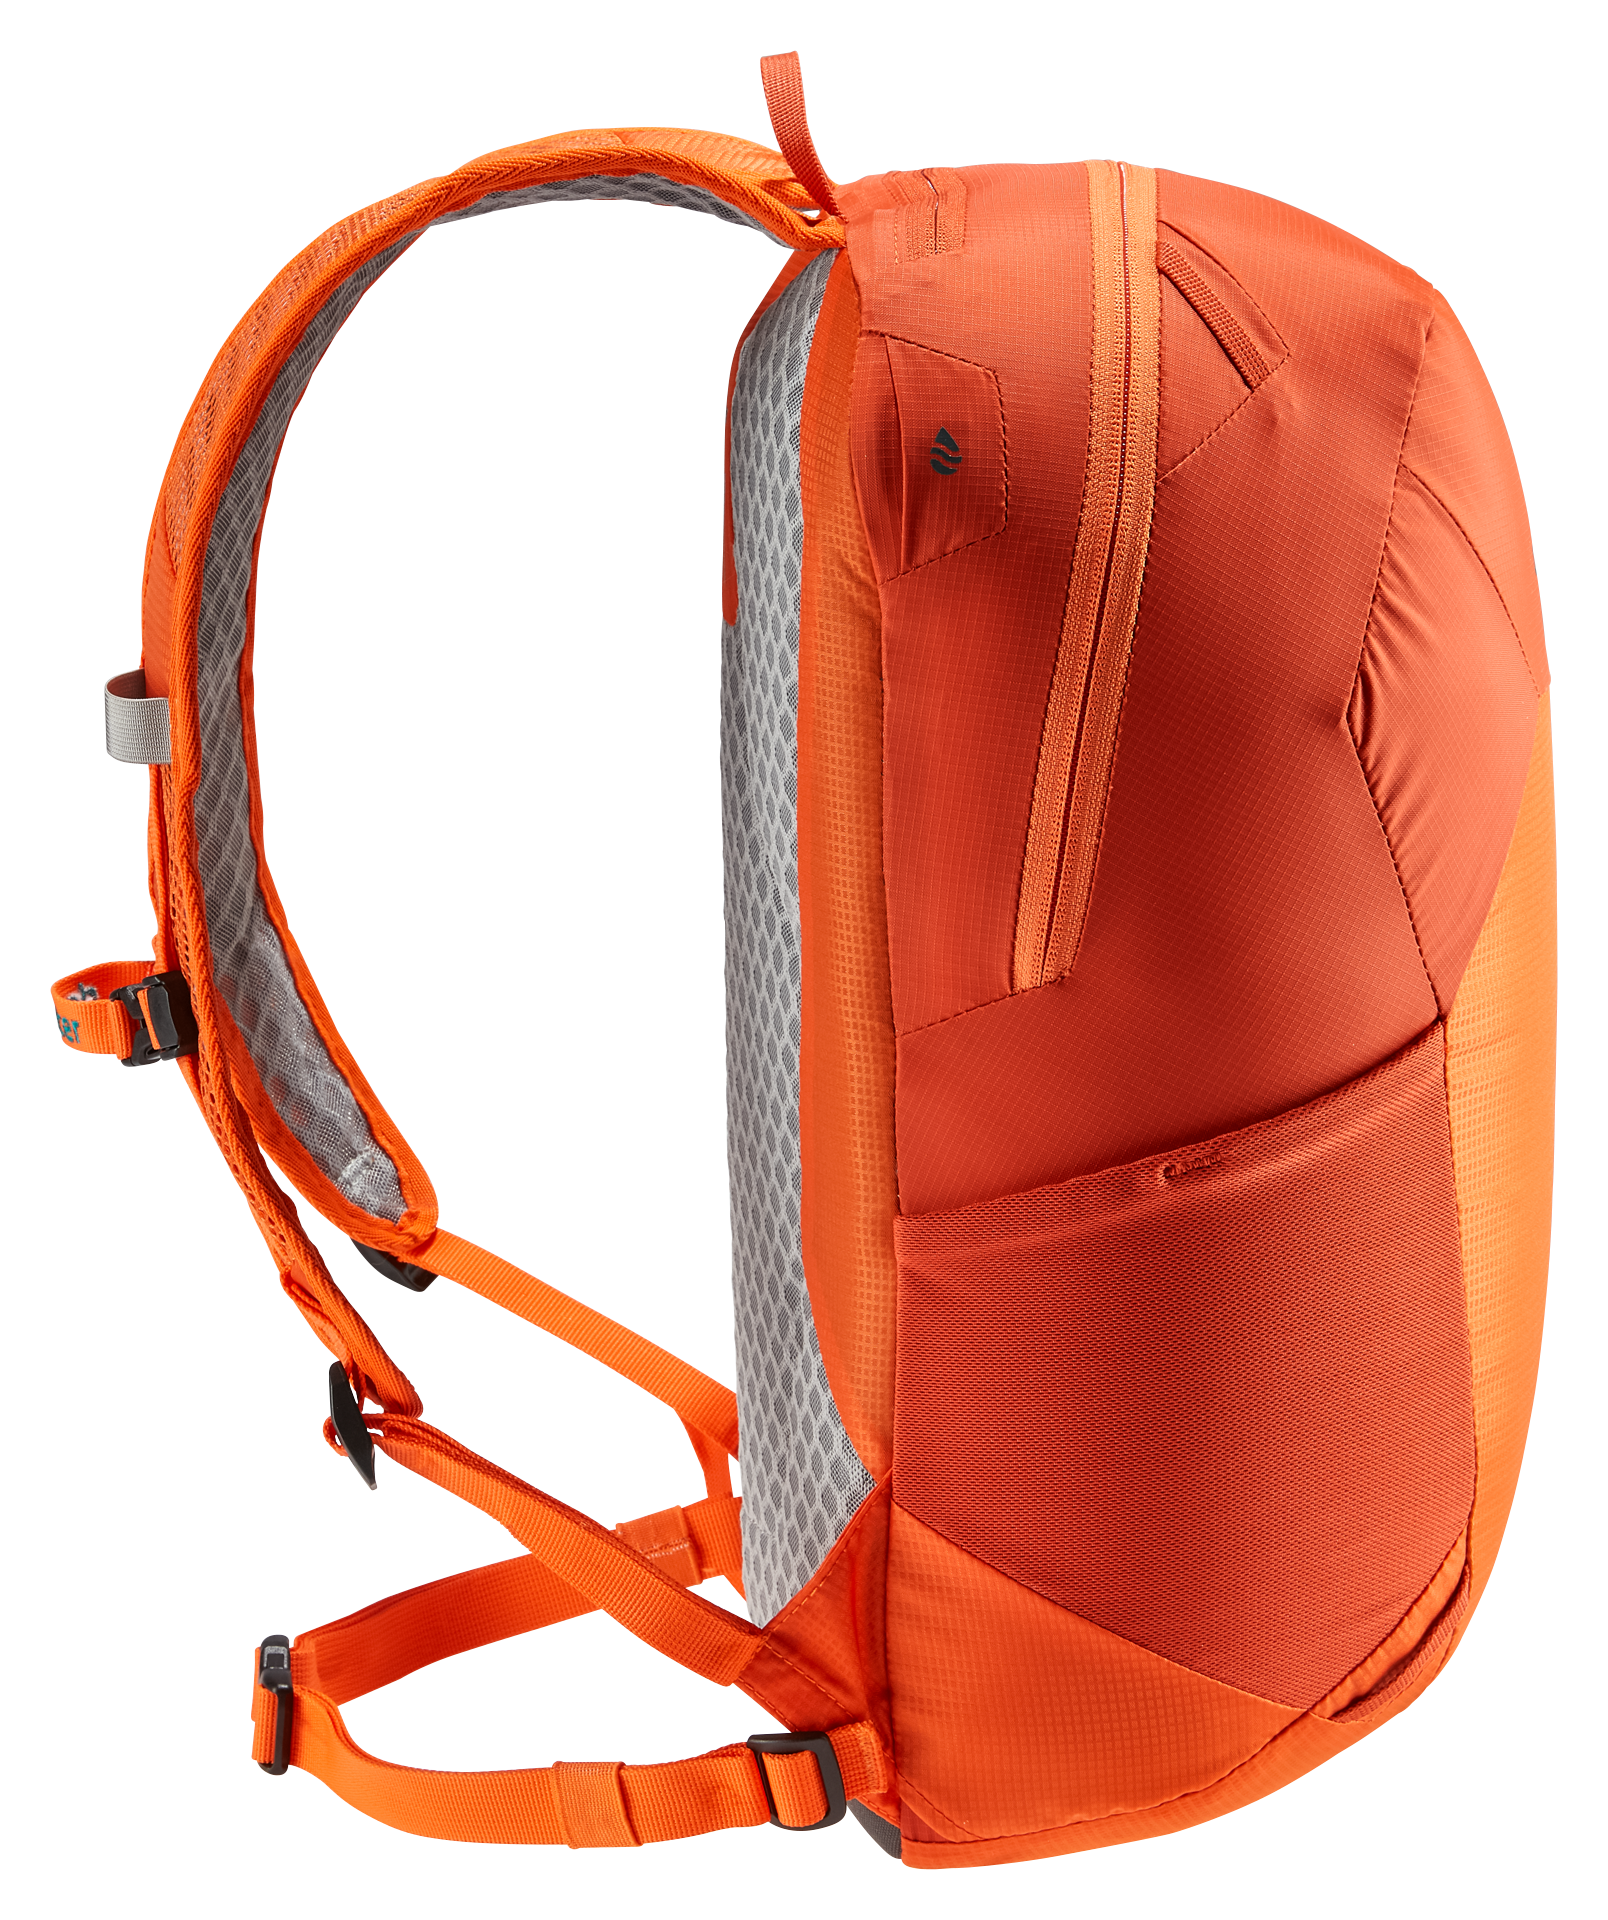 Deuter  Speed Lite 17 - Wanderrucksack - Orange (Paprika/Saffron)